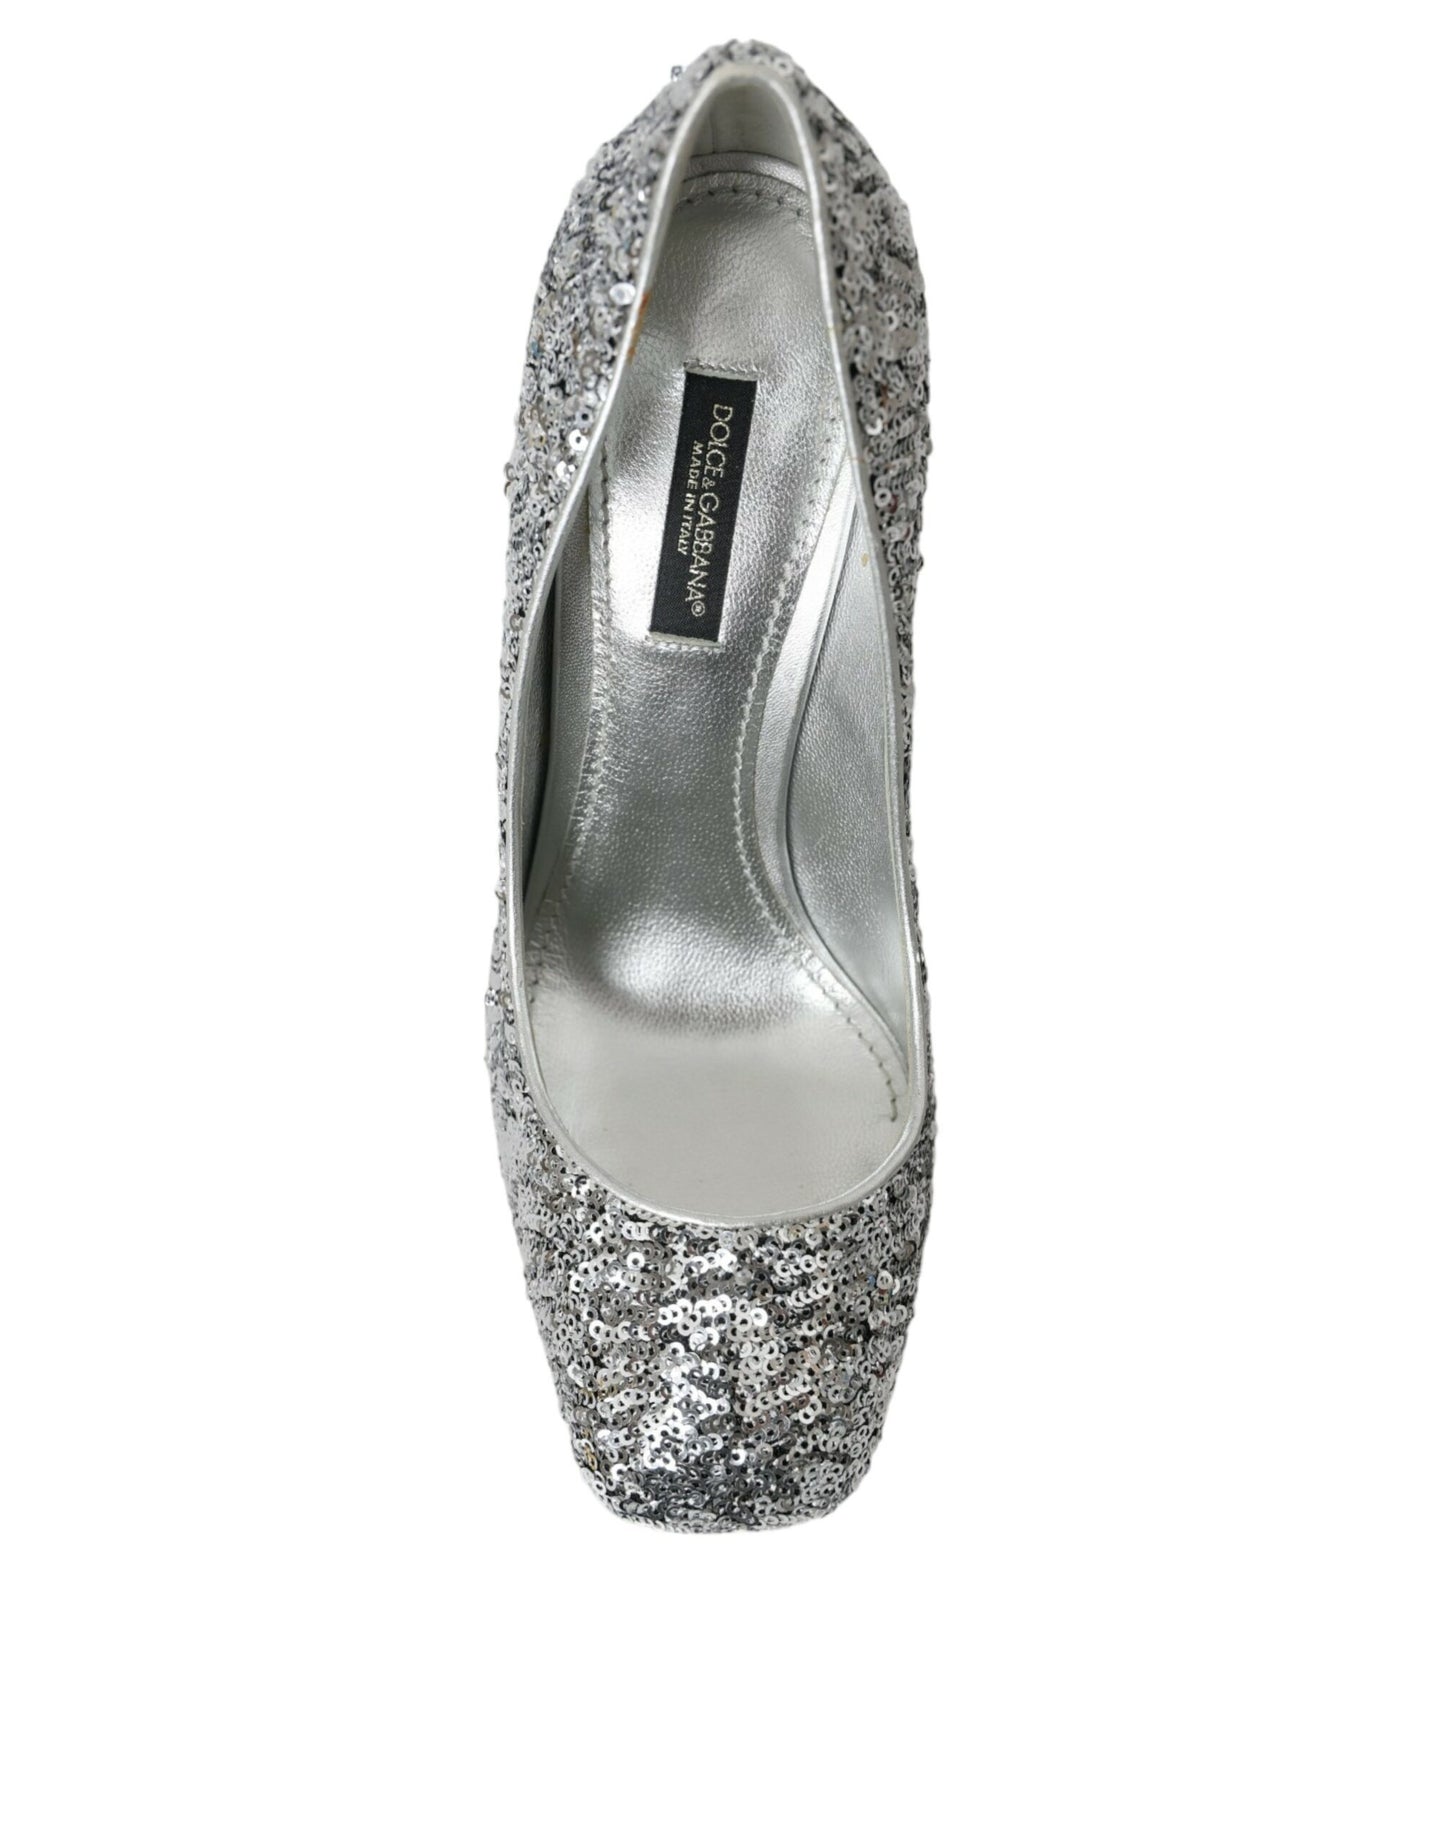 Silver Sequin Embellished Heels Pumps Shoes